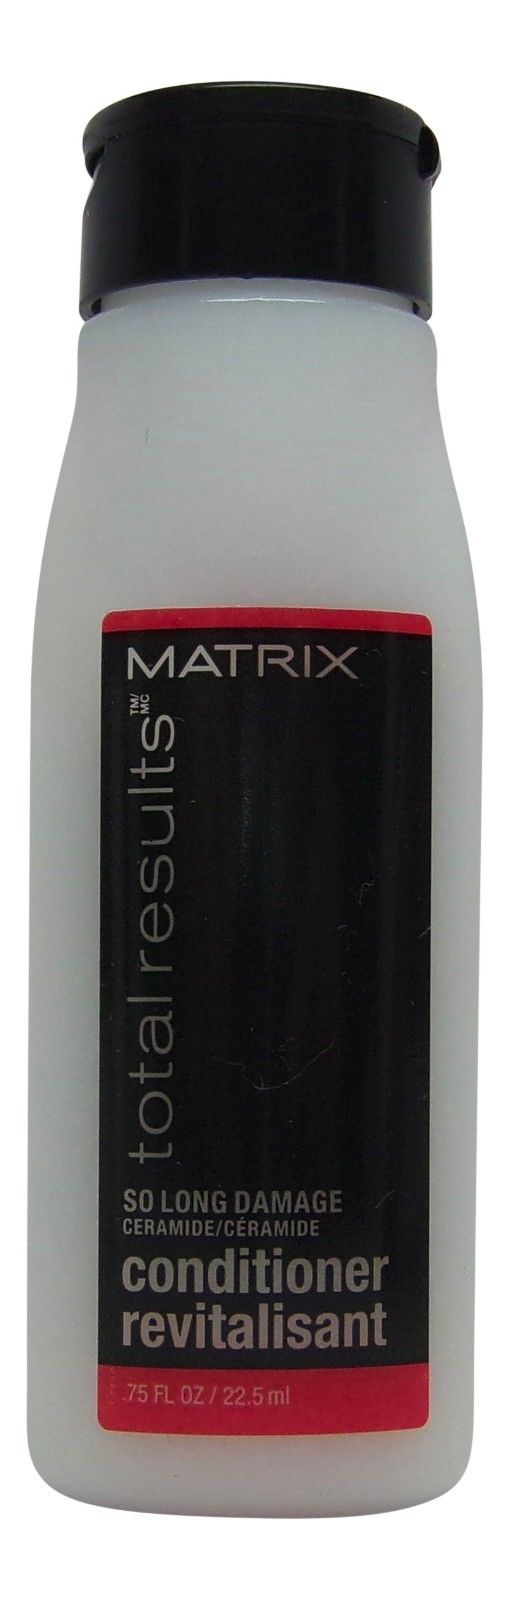 Matrix Total Results So Long Damage Conditioner Lot of 6 Ea 0.75oz Bottles Total 4.5oz